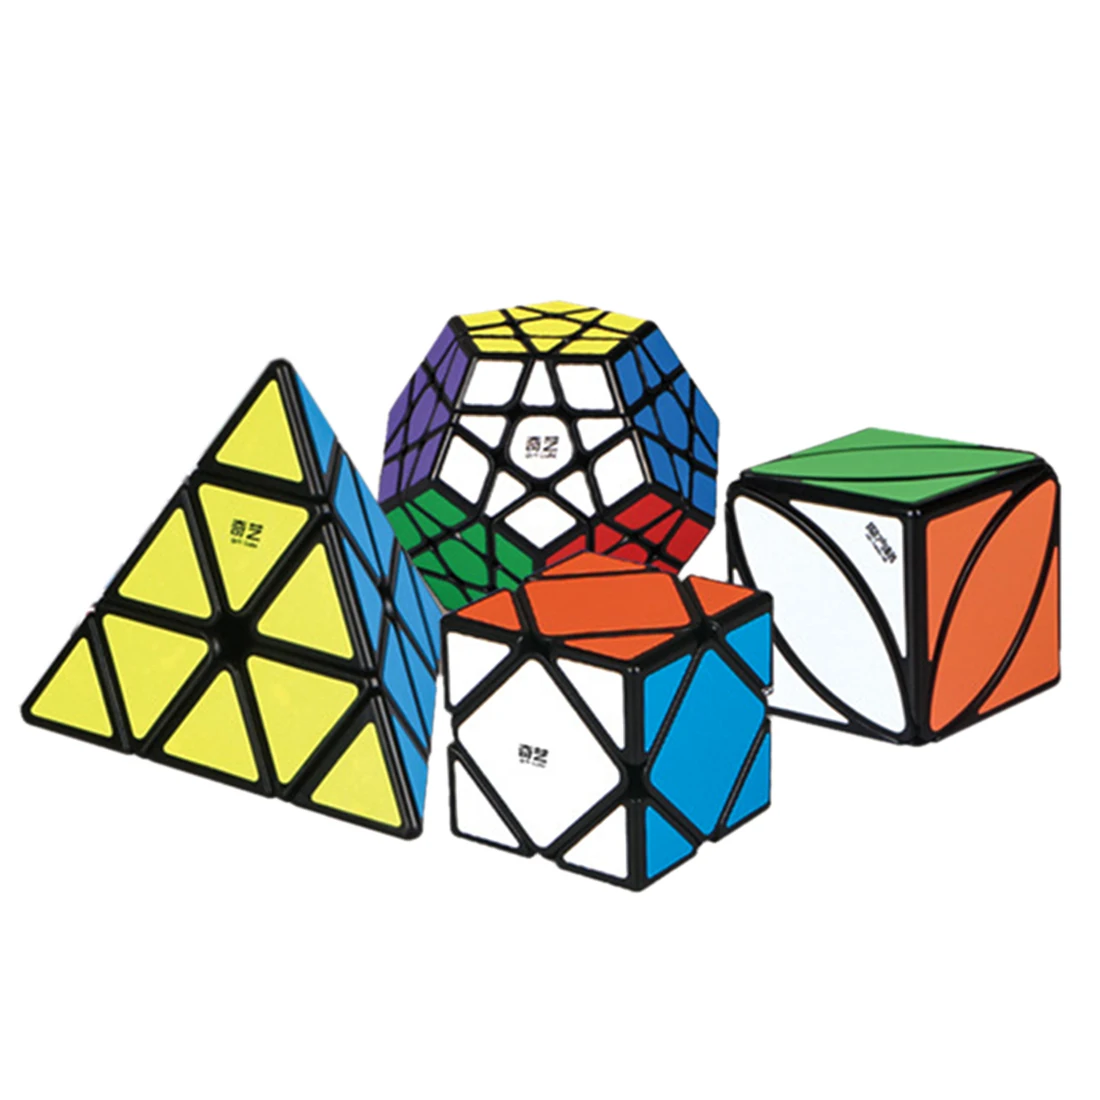 QIYI 12-sides Skew Lvy необычный кубик куб головоломка набор черный Professional Cubo Magico игрушки для детей Дети с подарочной коробкой